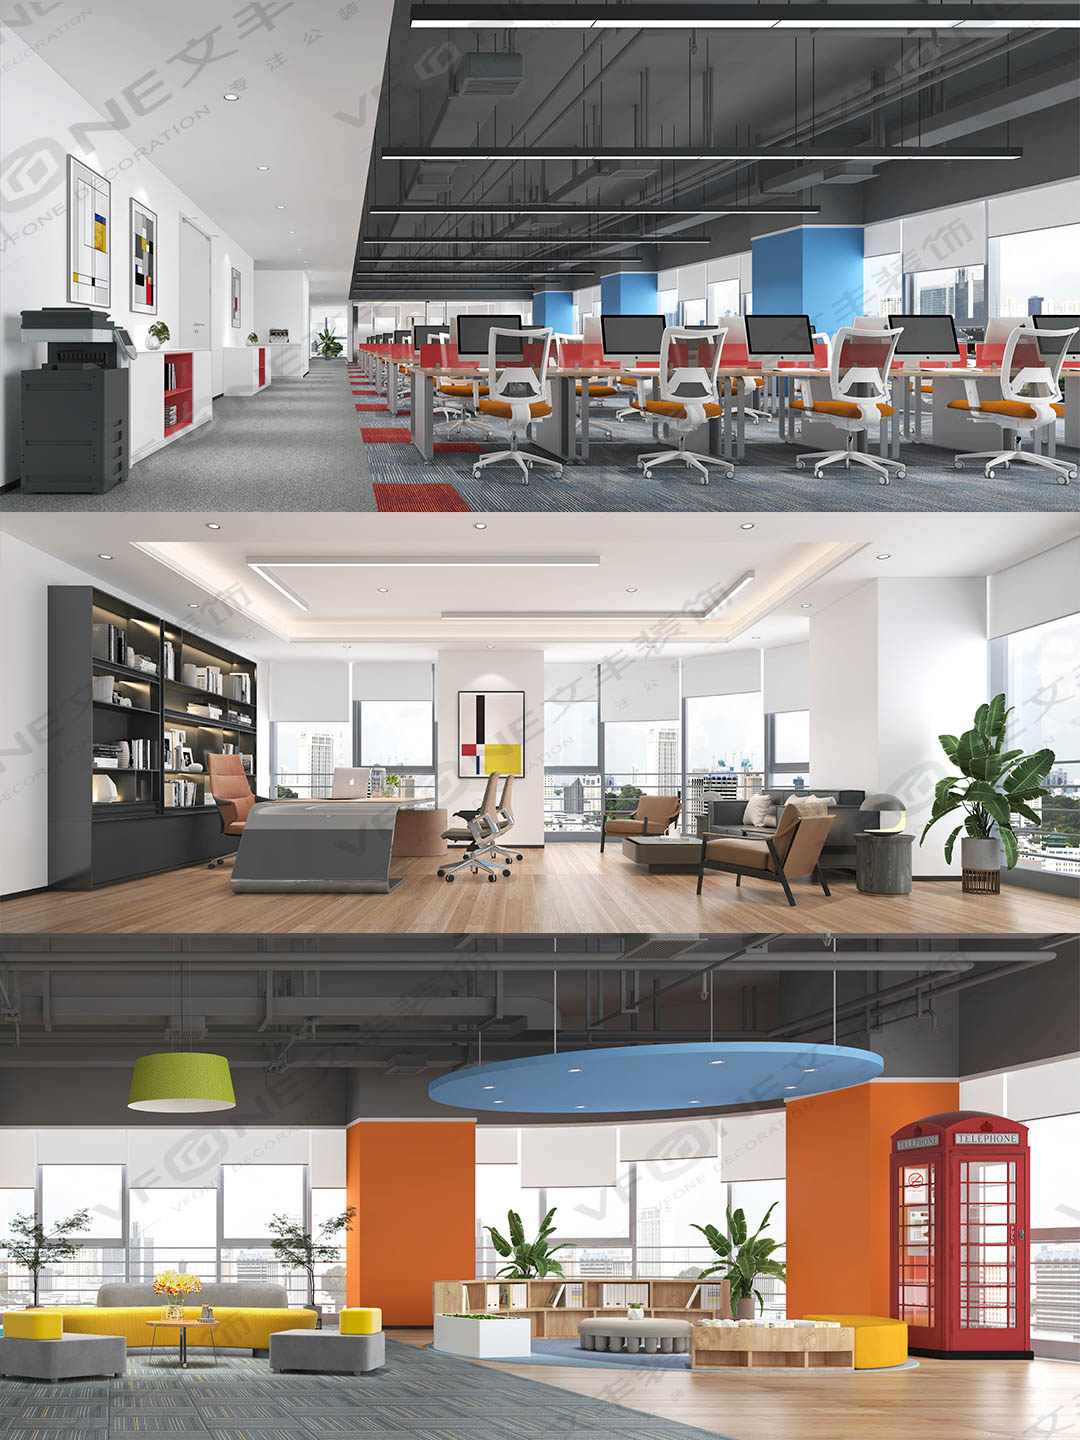 光明辦公室裝修公司 | 辦公室裝修設計 | 打造高端、科技、創新辦公室